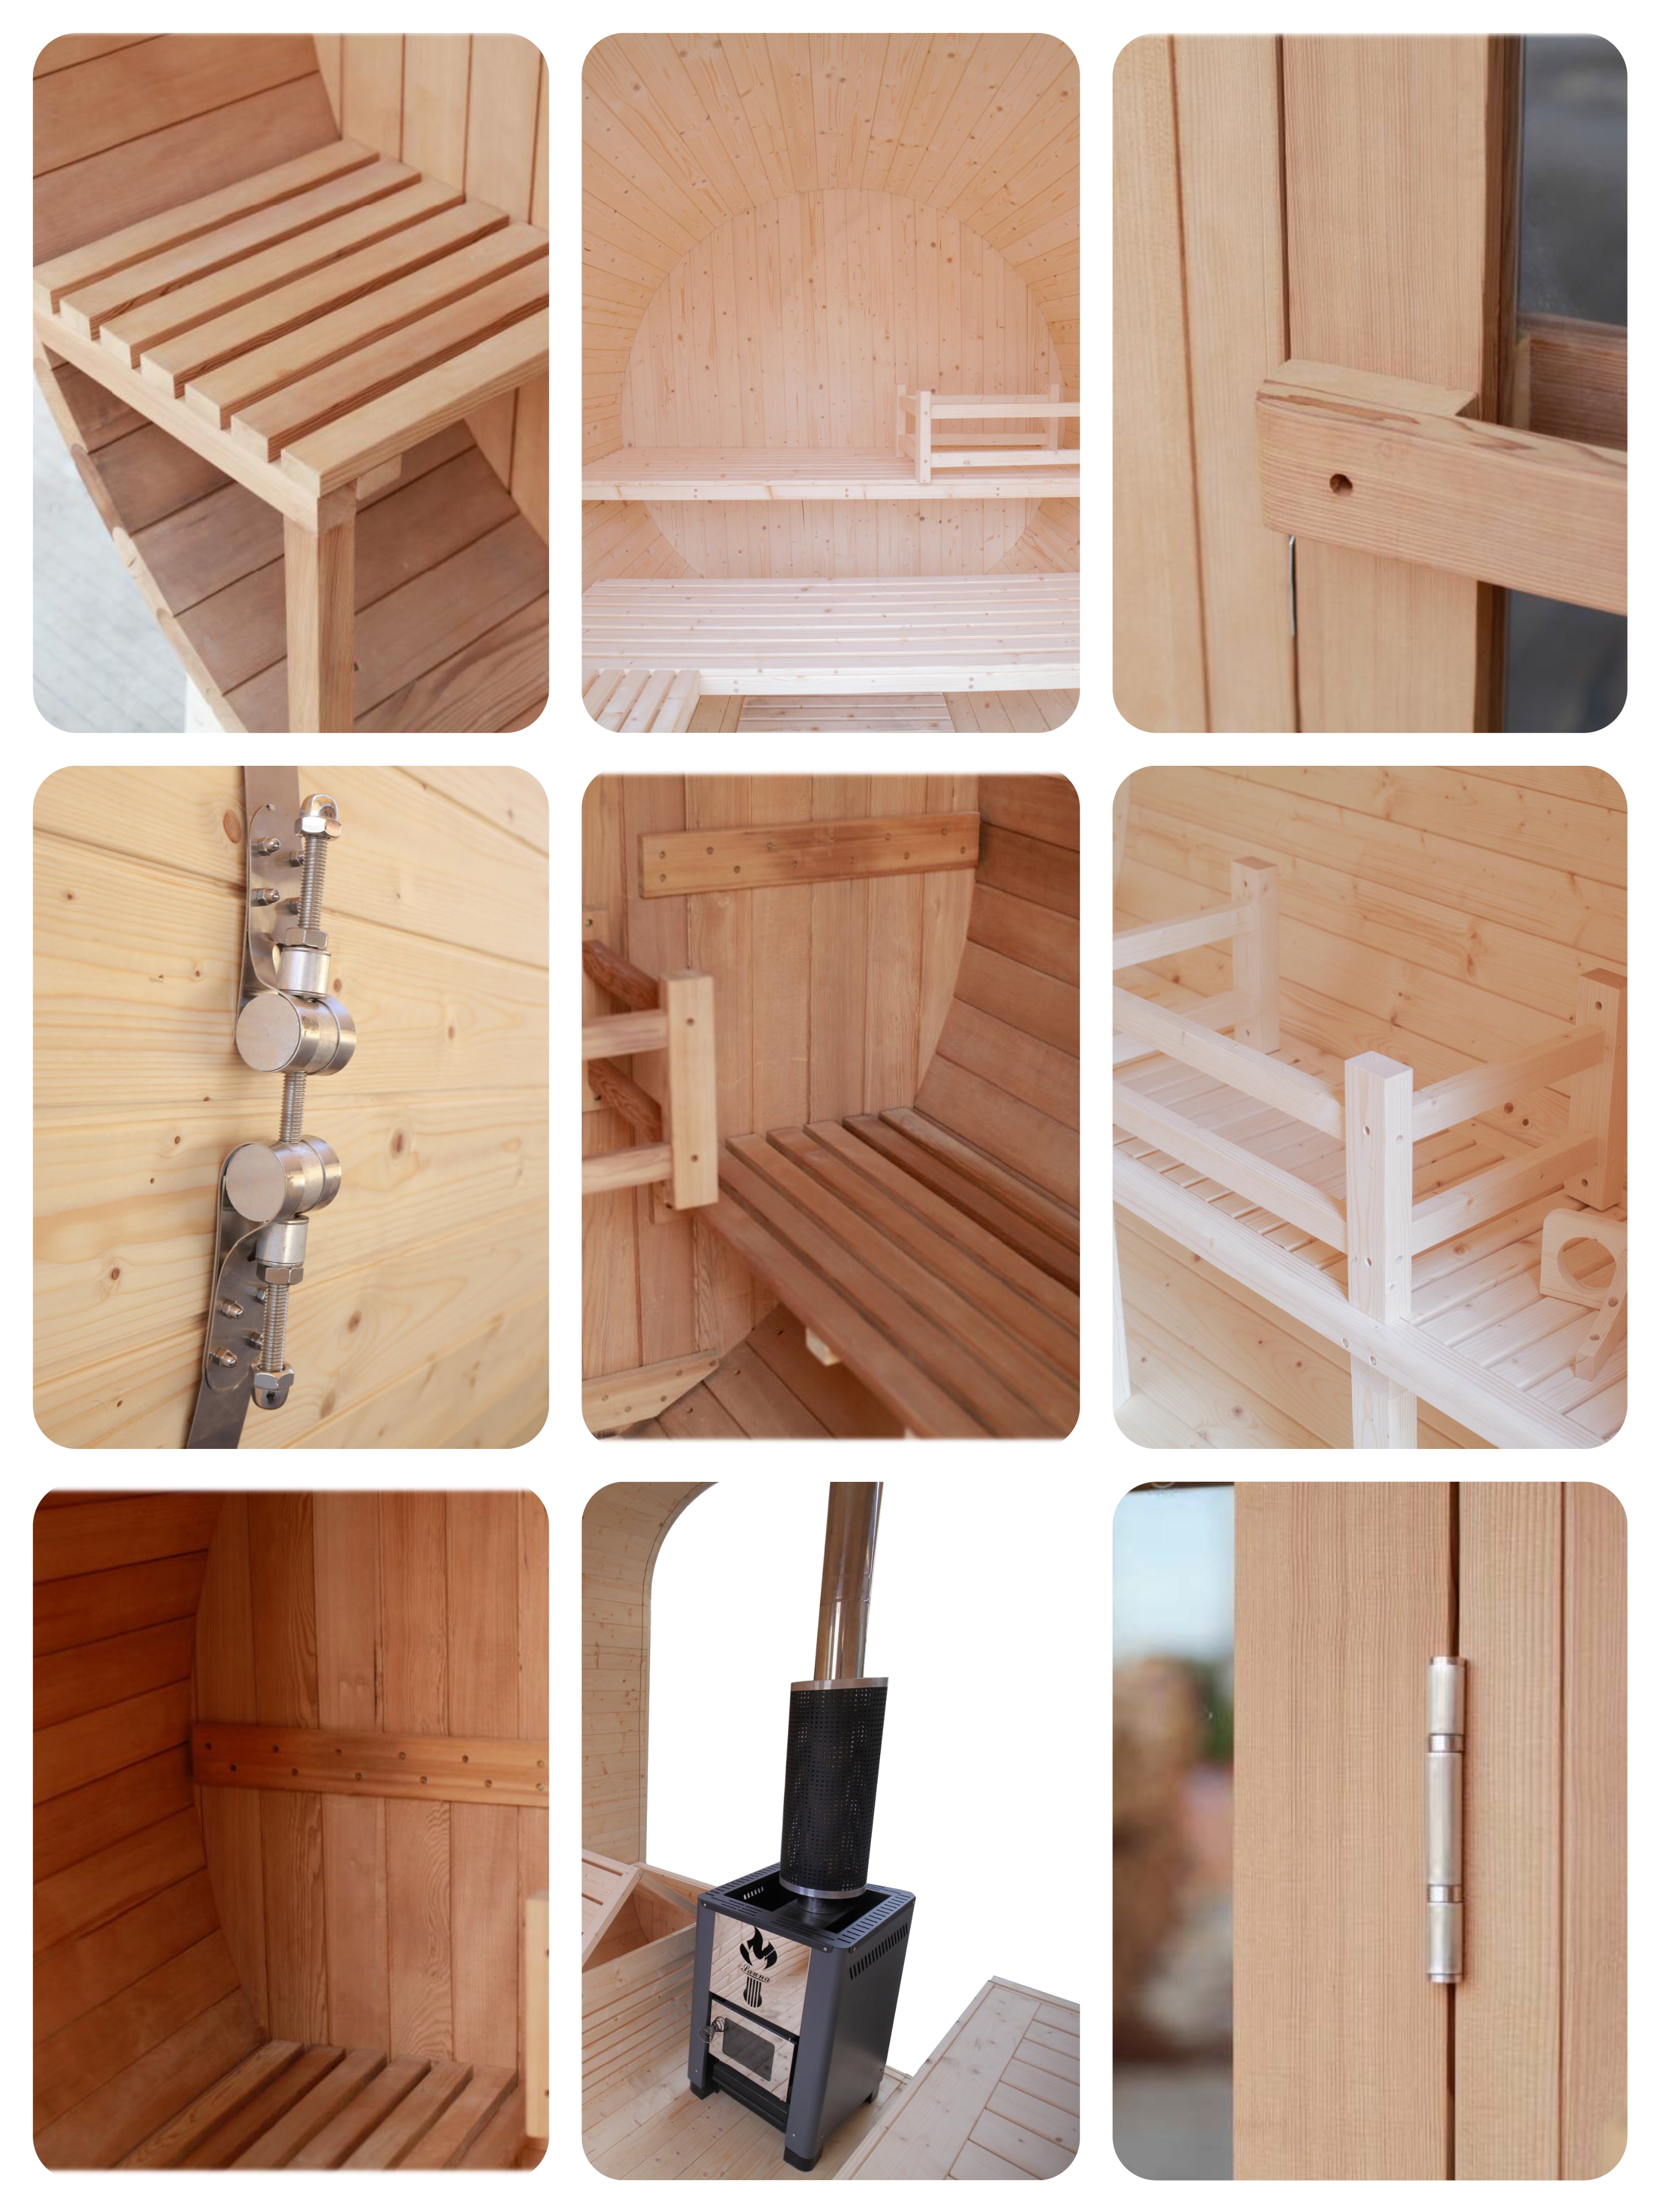 Details of Outdoor Sauna